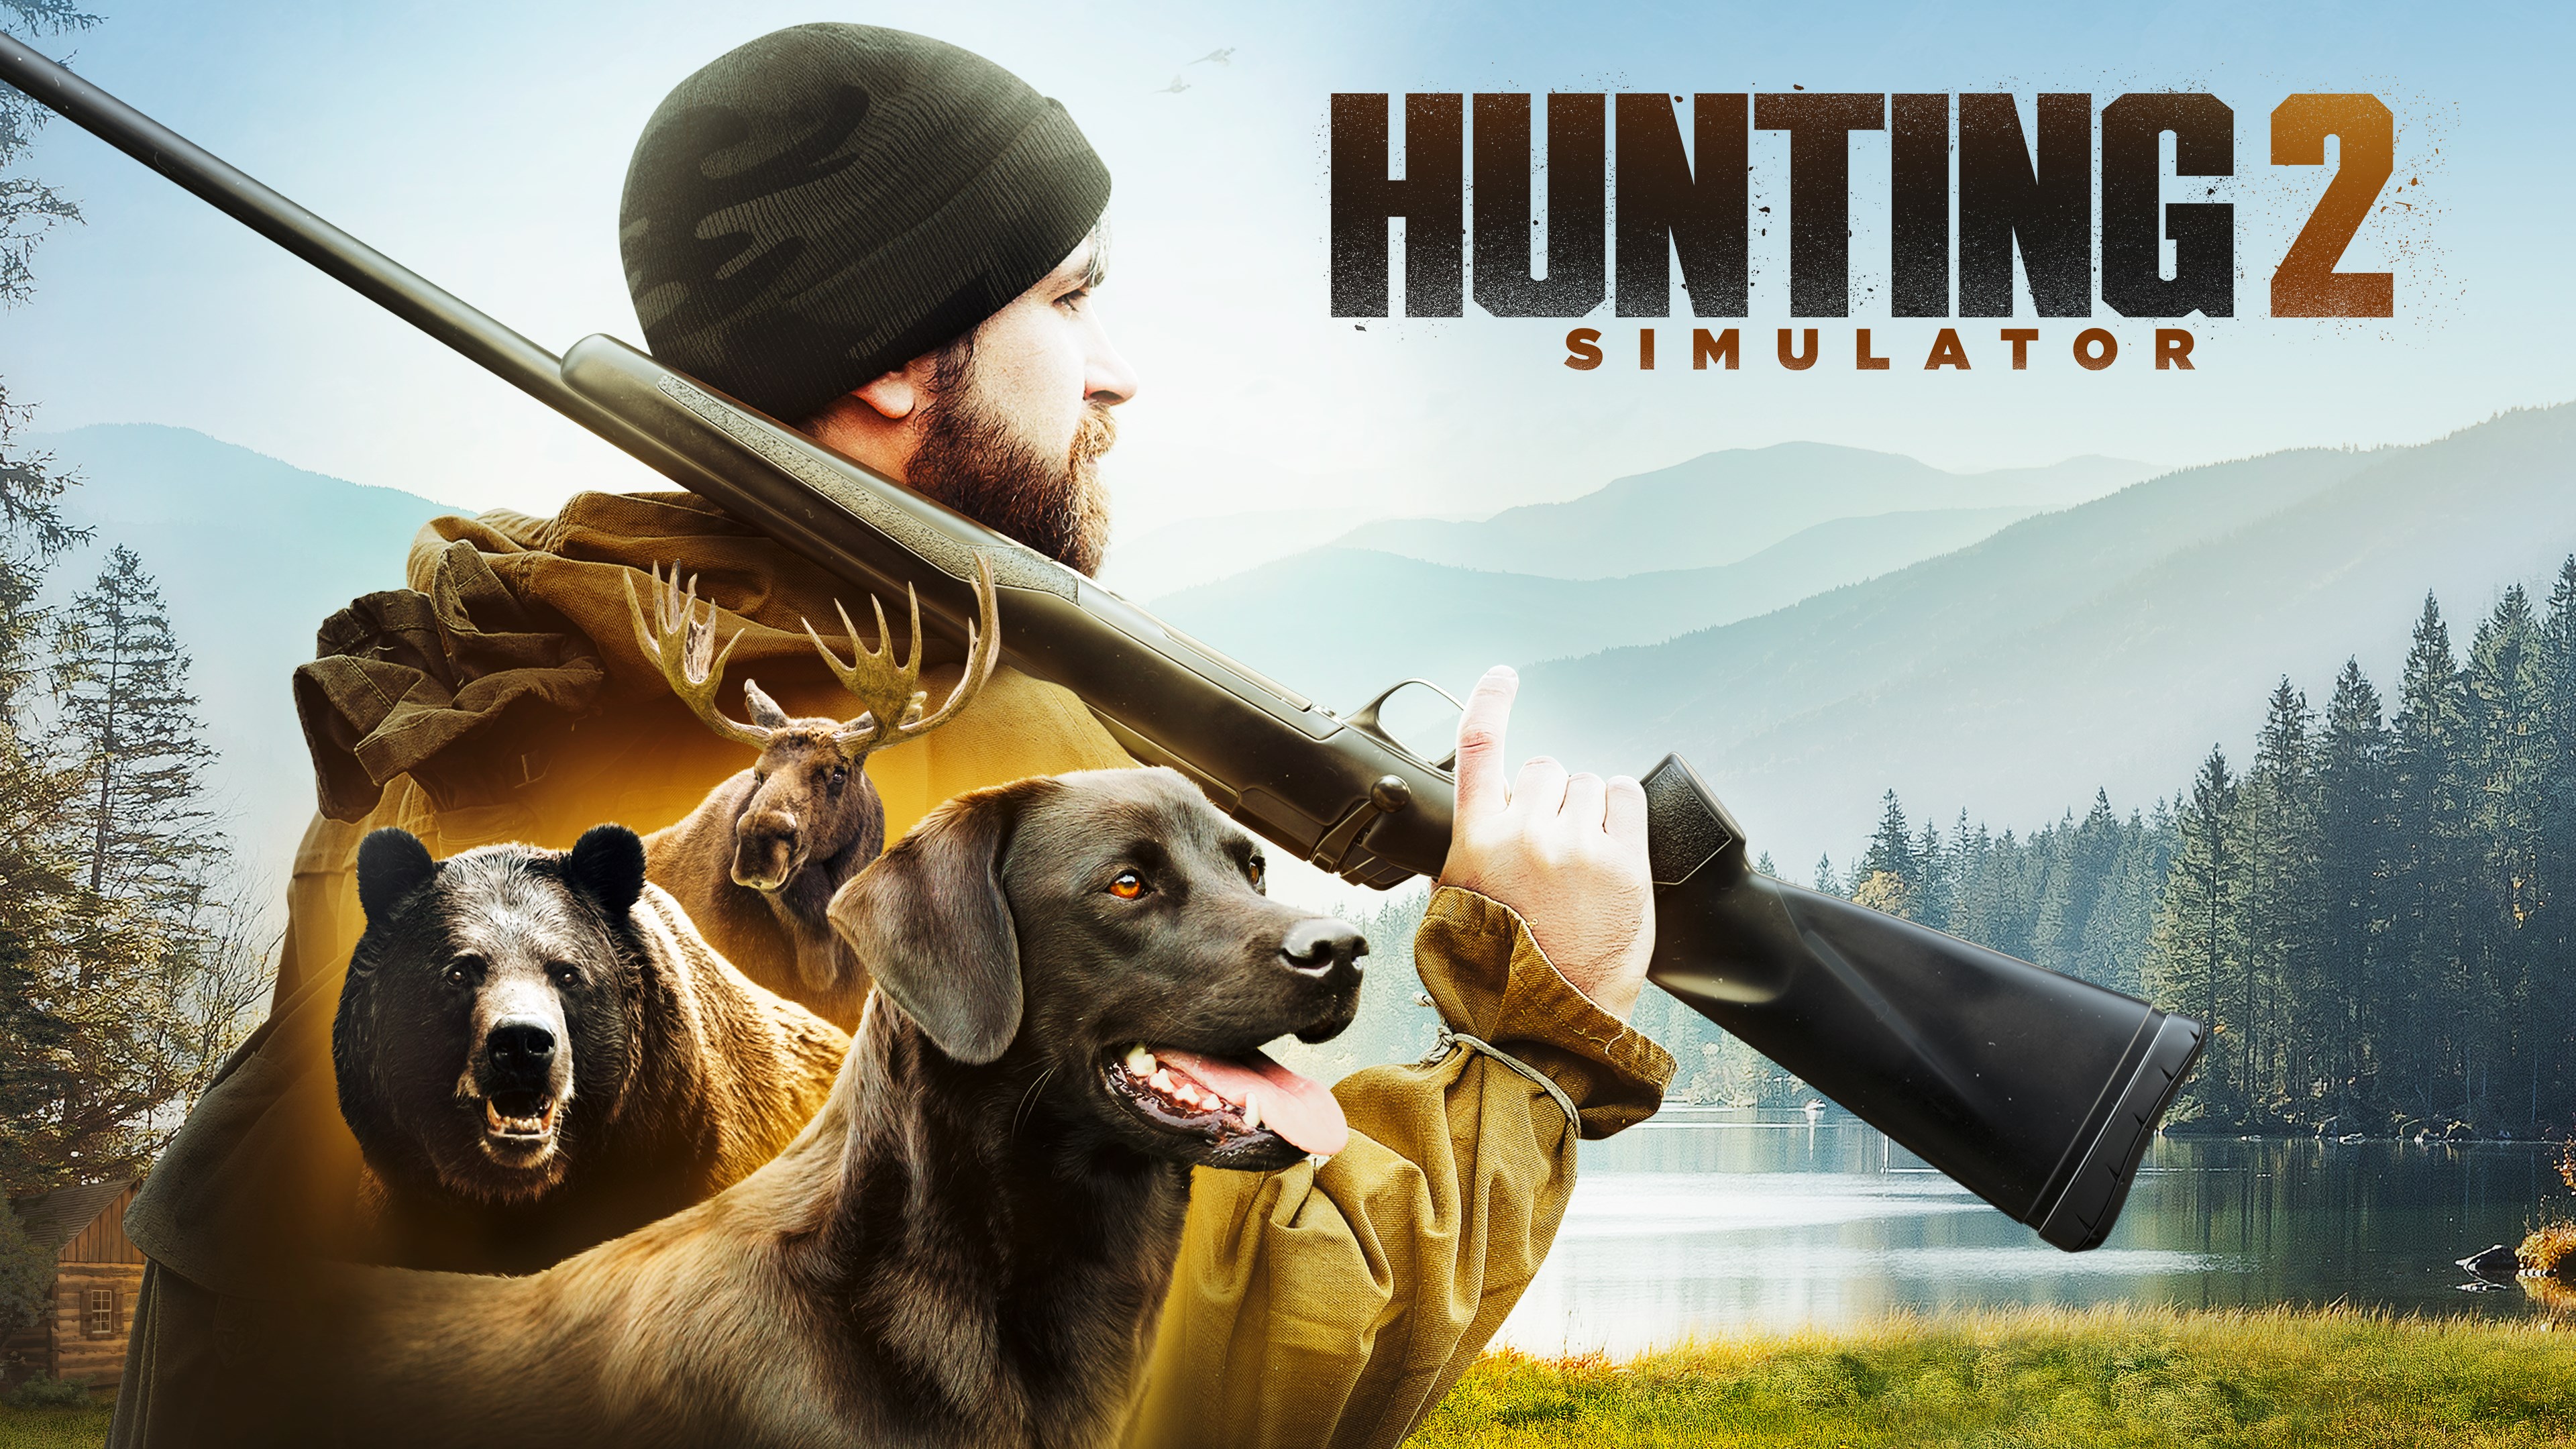 Buy Hunting Simulator 2 Microsoft Store - hunting simulator 2 roblox